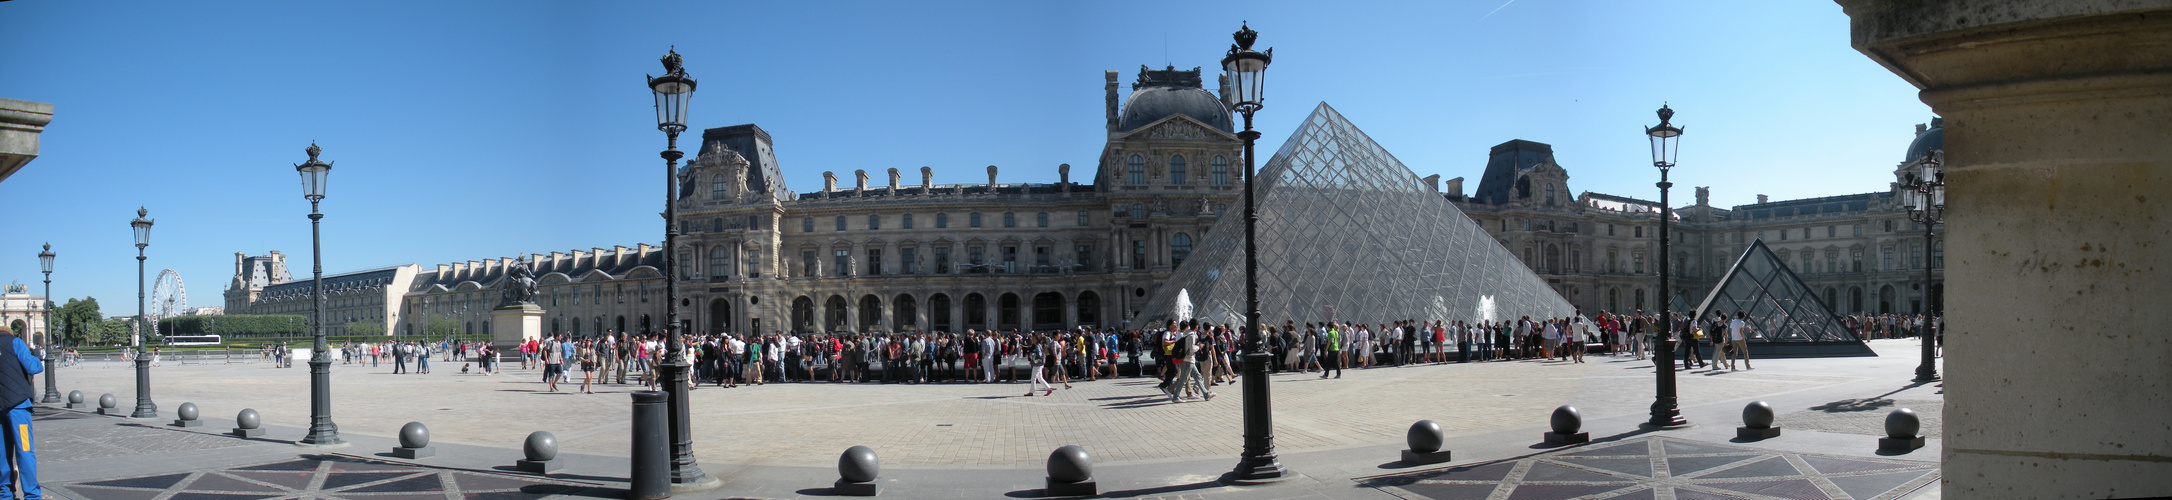 Museé du Louvre - Paris